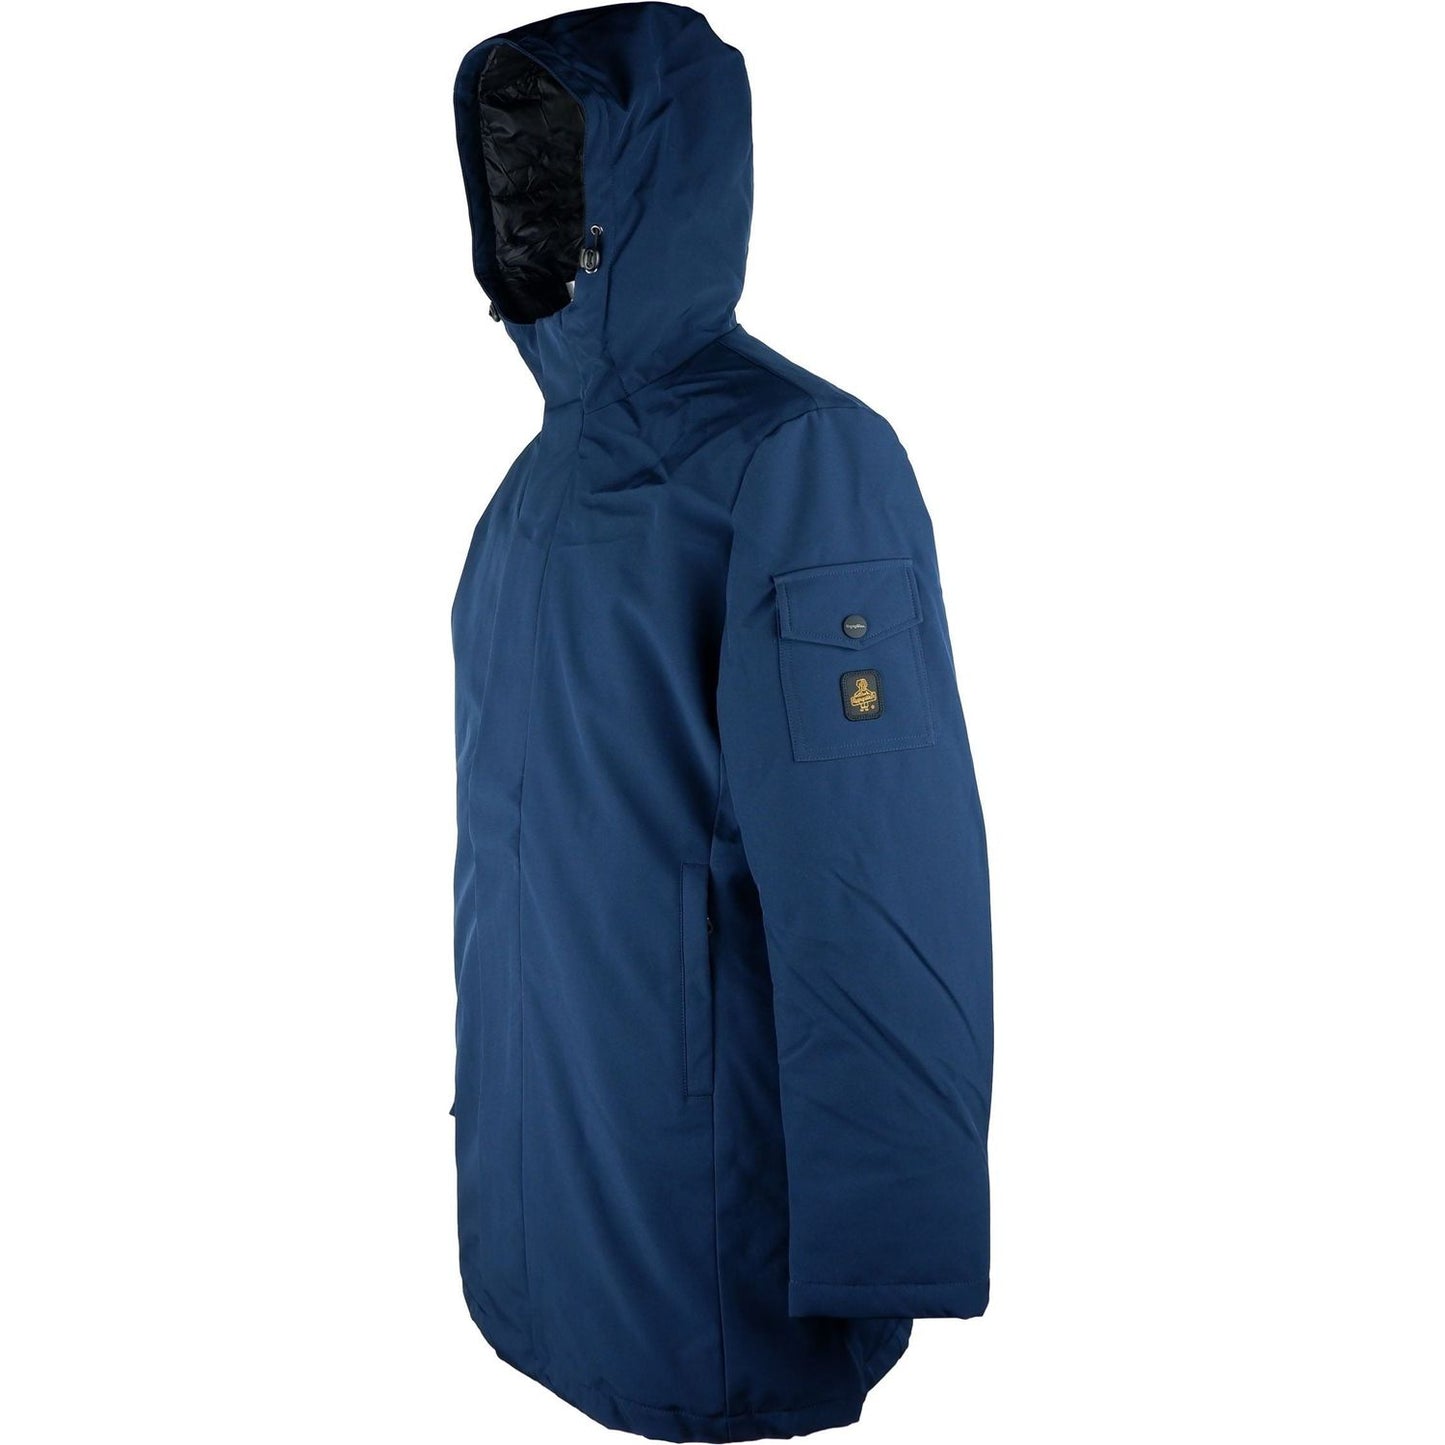 Refrigiwear Elegant Men's Long Jacket with Hood blue-polyester-jacket-3 MAN COATS & JACKETS stock_product_image_5264_1754542883-scaled-42e4b86c-654.jpg